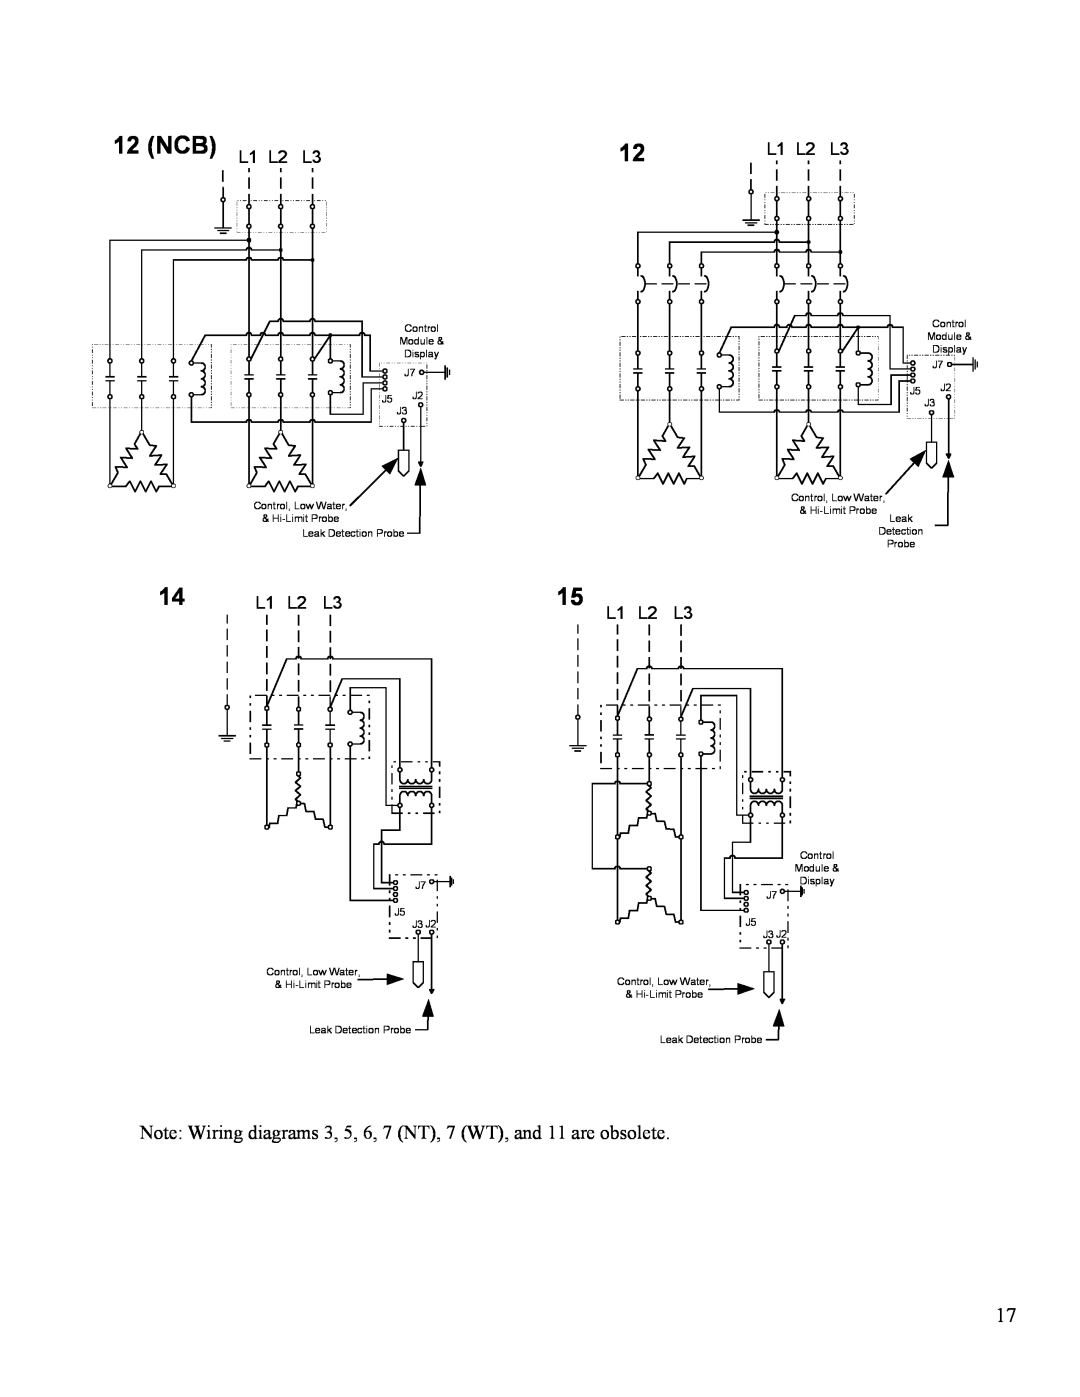 Hubbell Electric Heater Company J manual NCB L1 L2 L3 